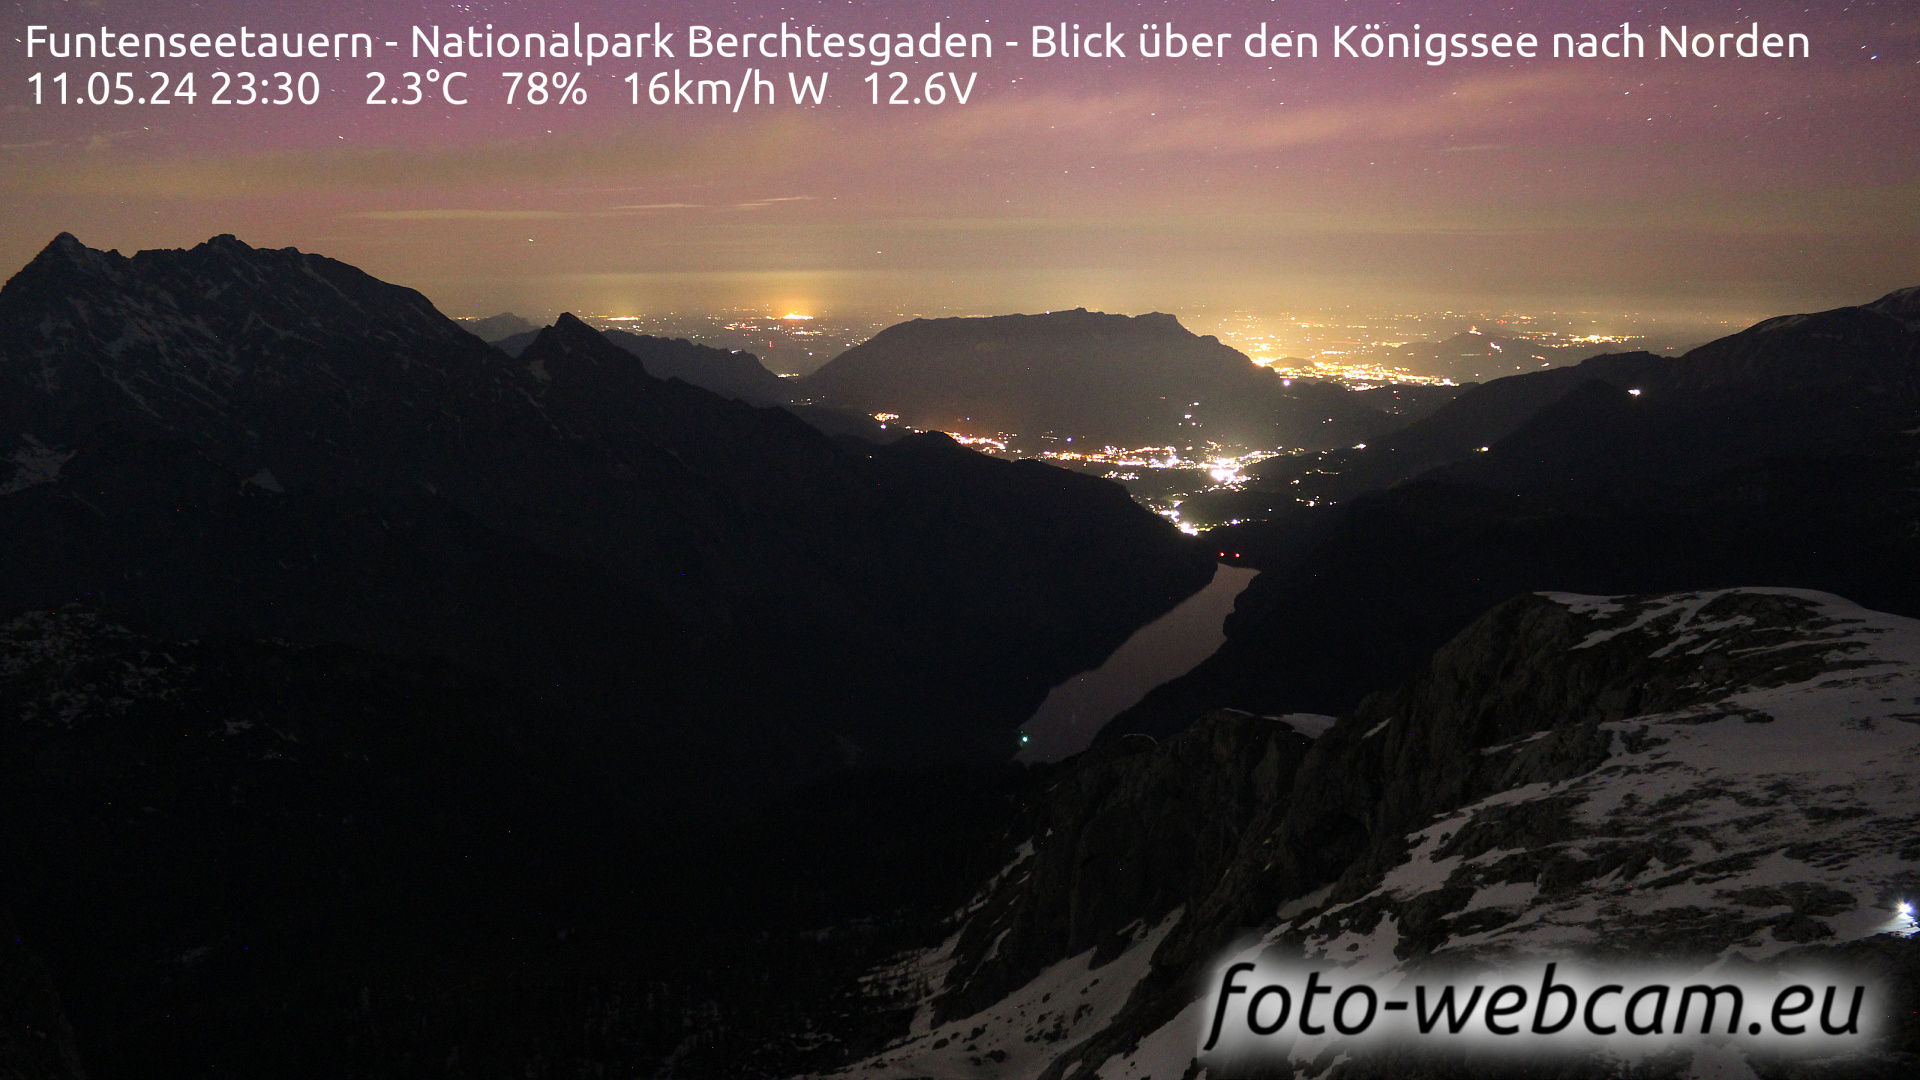 Berchtesgaden Thu. 23:48